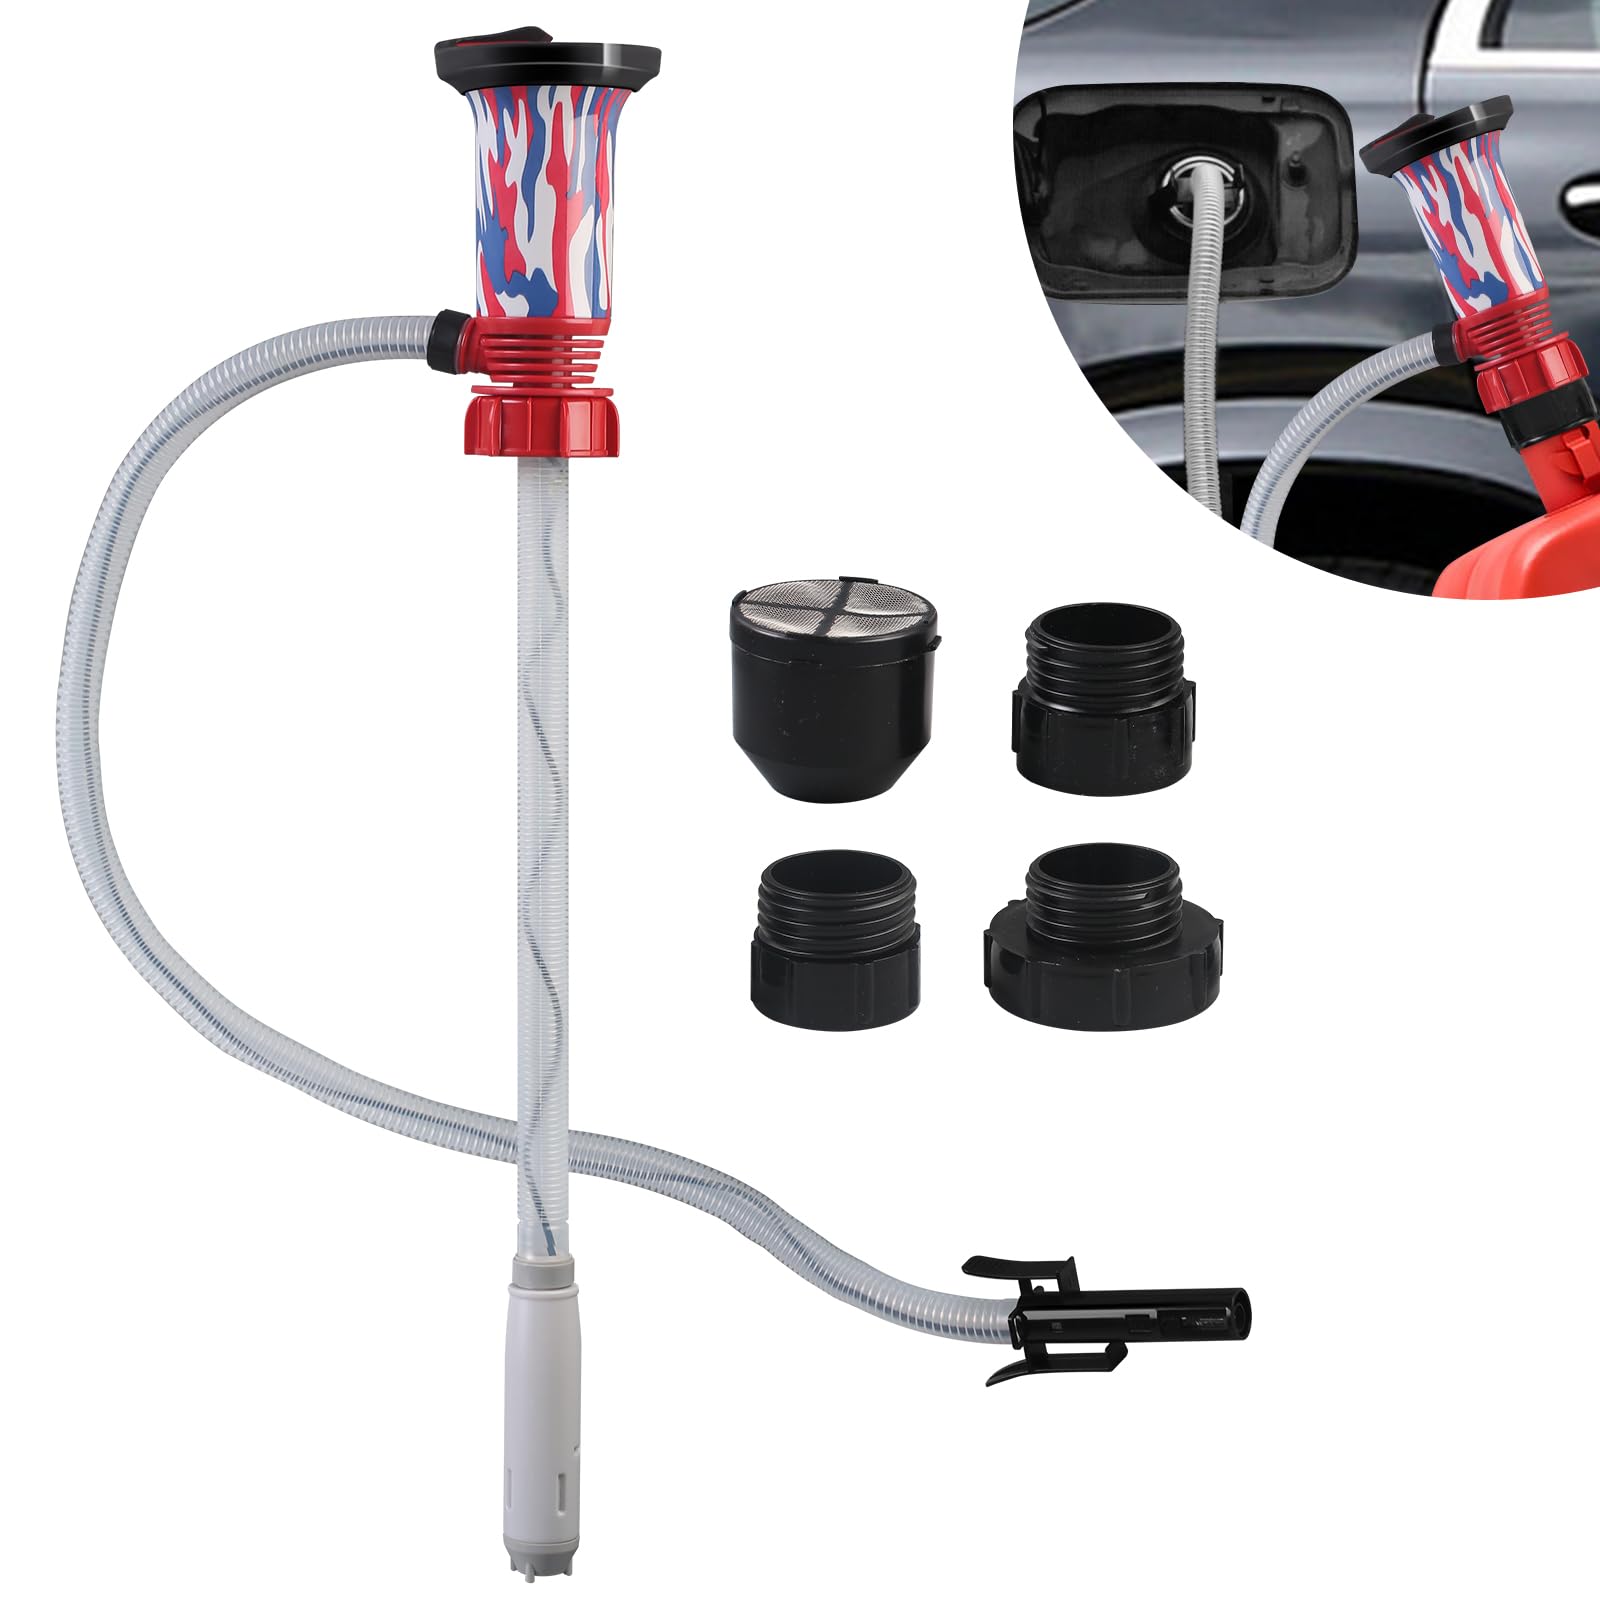 Kraftstoff Umfüllpumpe mit Auto-Stopp-Sensor, Elektrische Benzinpumpe Ölabsaugpumpe Wasser Pumpe mit 3 Größen-Adapter,Tragbare Kanisterpumpe Absaugpumpe von STEEIRO